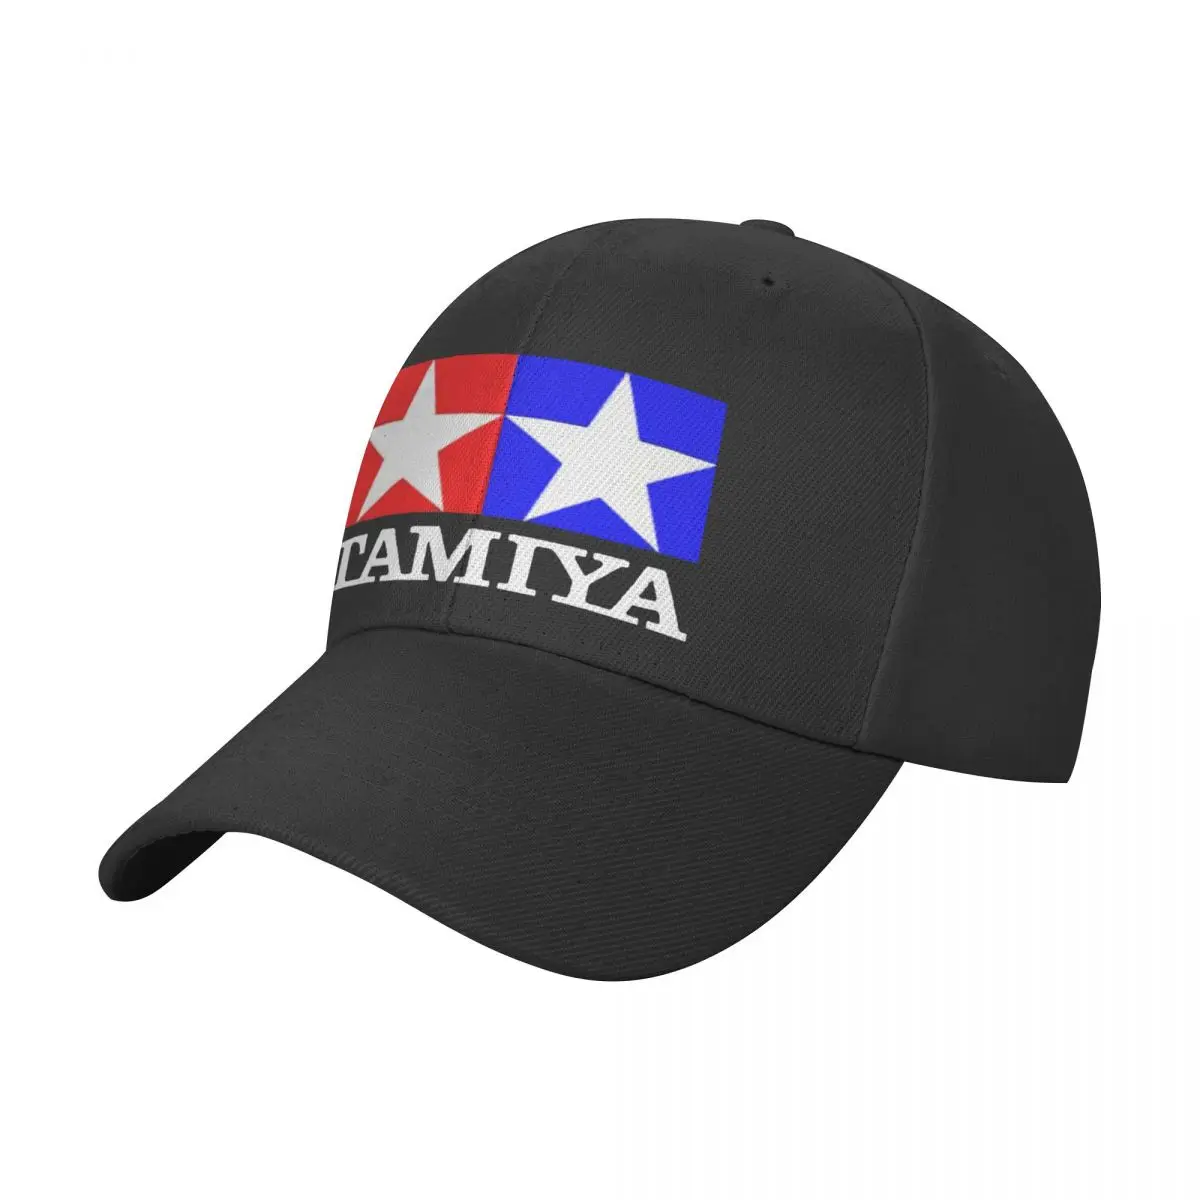 Tamiya Logo Toy Racing Cars 80S 90S Black Baseball Cap Peaked Cap Men's Hat Women's Cap Caps Men Brand Man Caps